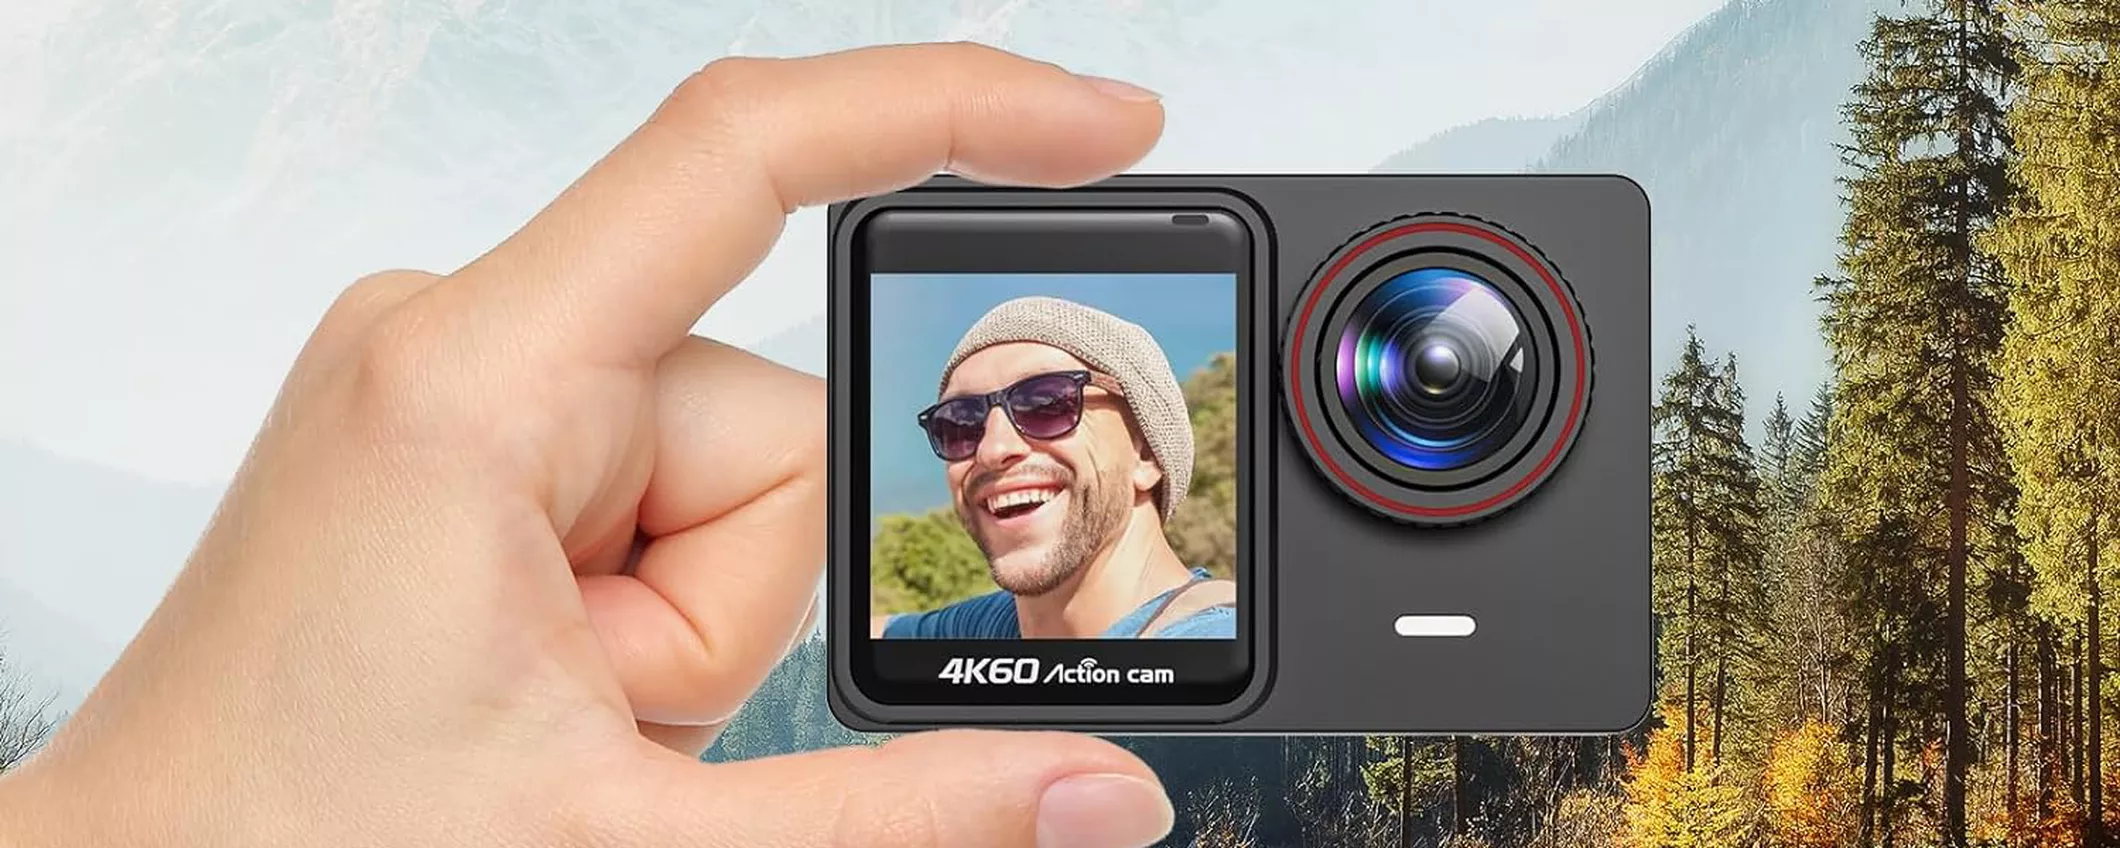 Action Cam 4K/60fps a 45€: il GRANDE AFFARE è su Amazon col DOPPIO sconto